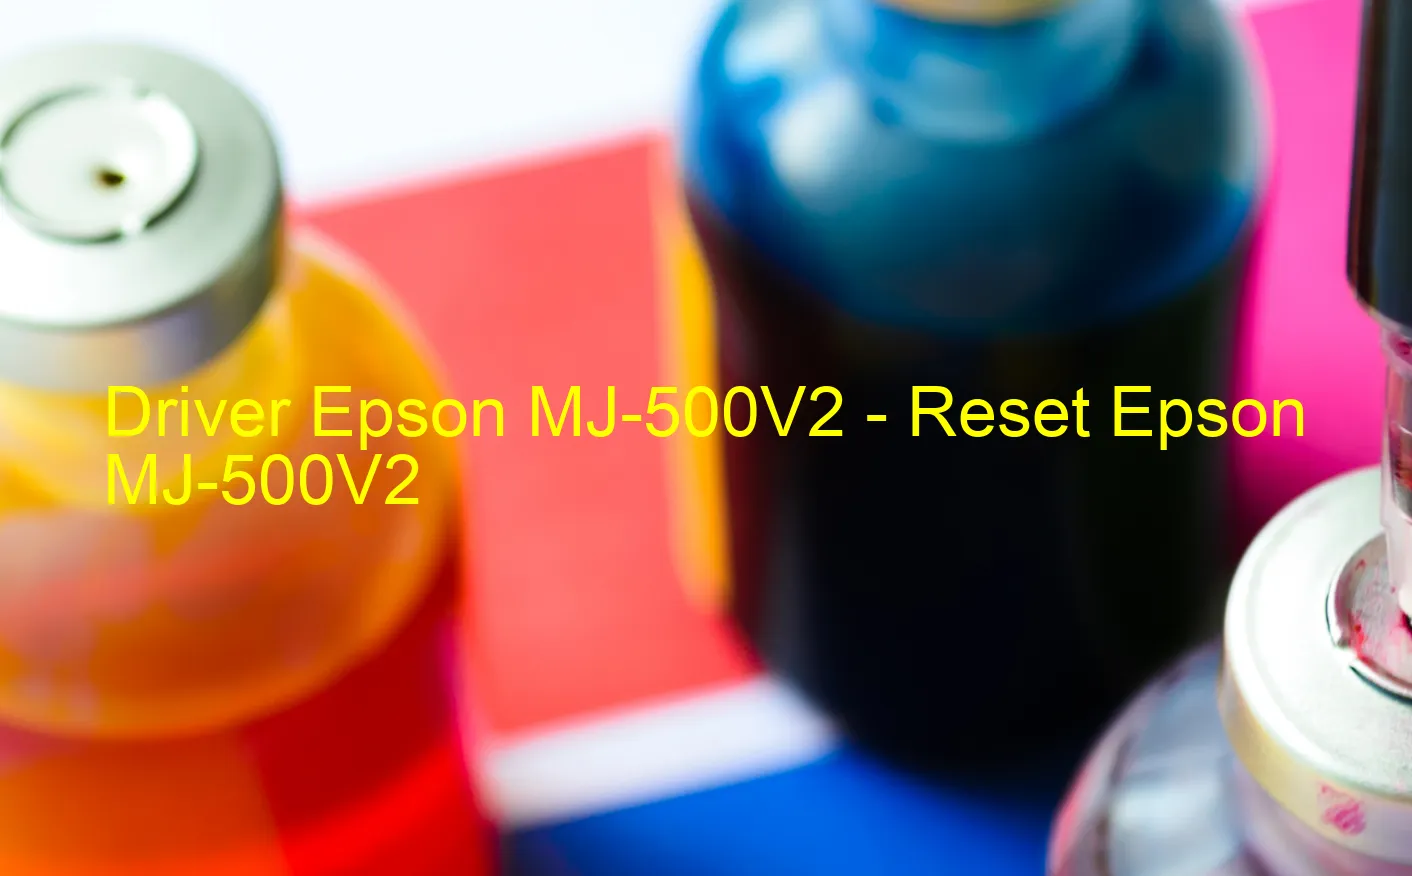 Epson MJ-500V2のドライバー、Epson MJ-500V2のリセットソフトウェア